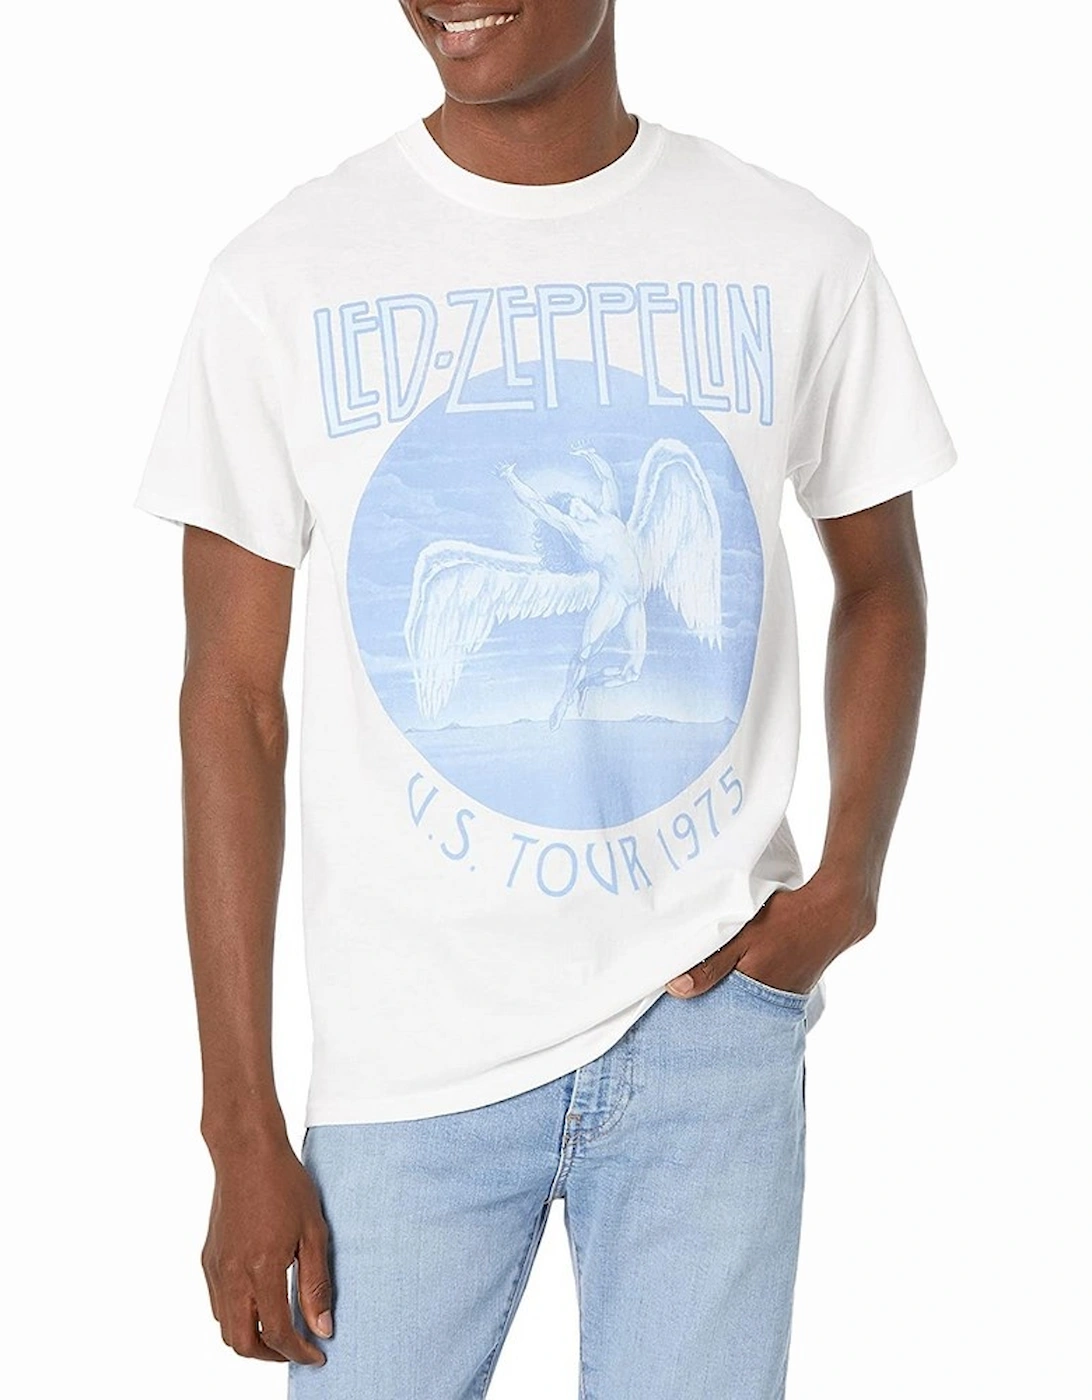 Unisex Adult Tour ?'75 T-Shirt